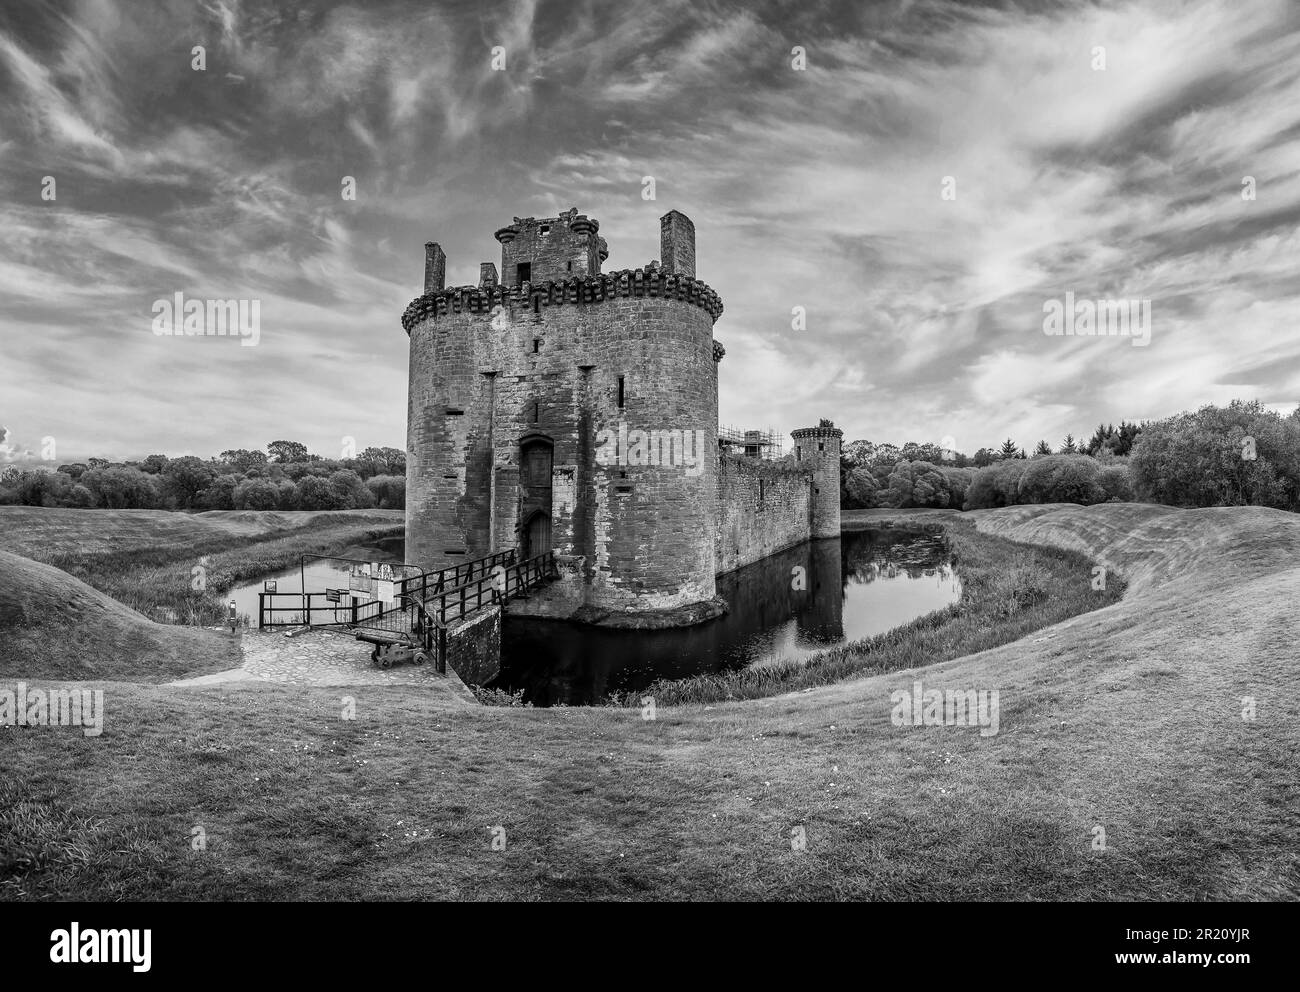 Ces ruines de la forteresse écossaise du 13th siècle du château de Caerlaverock sur les frontières écossaises de Dumfries et Galloway avec l'Angleterre. Banque D'Images